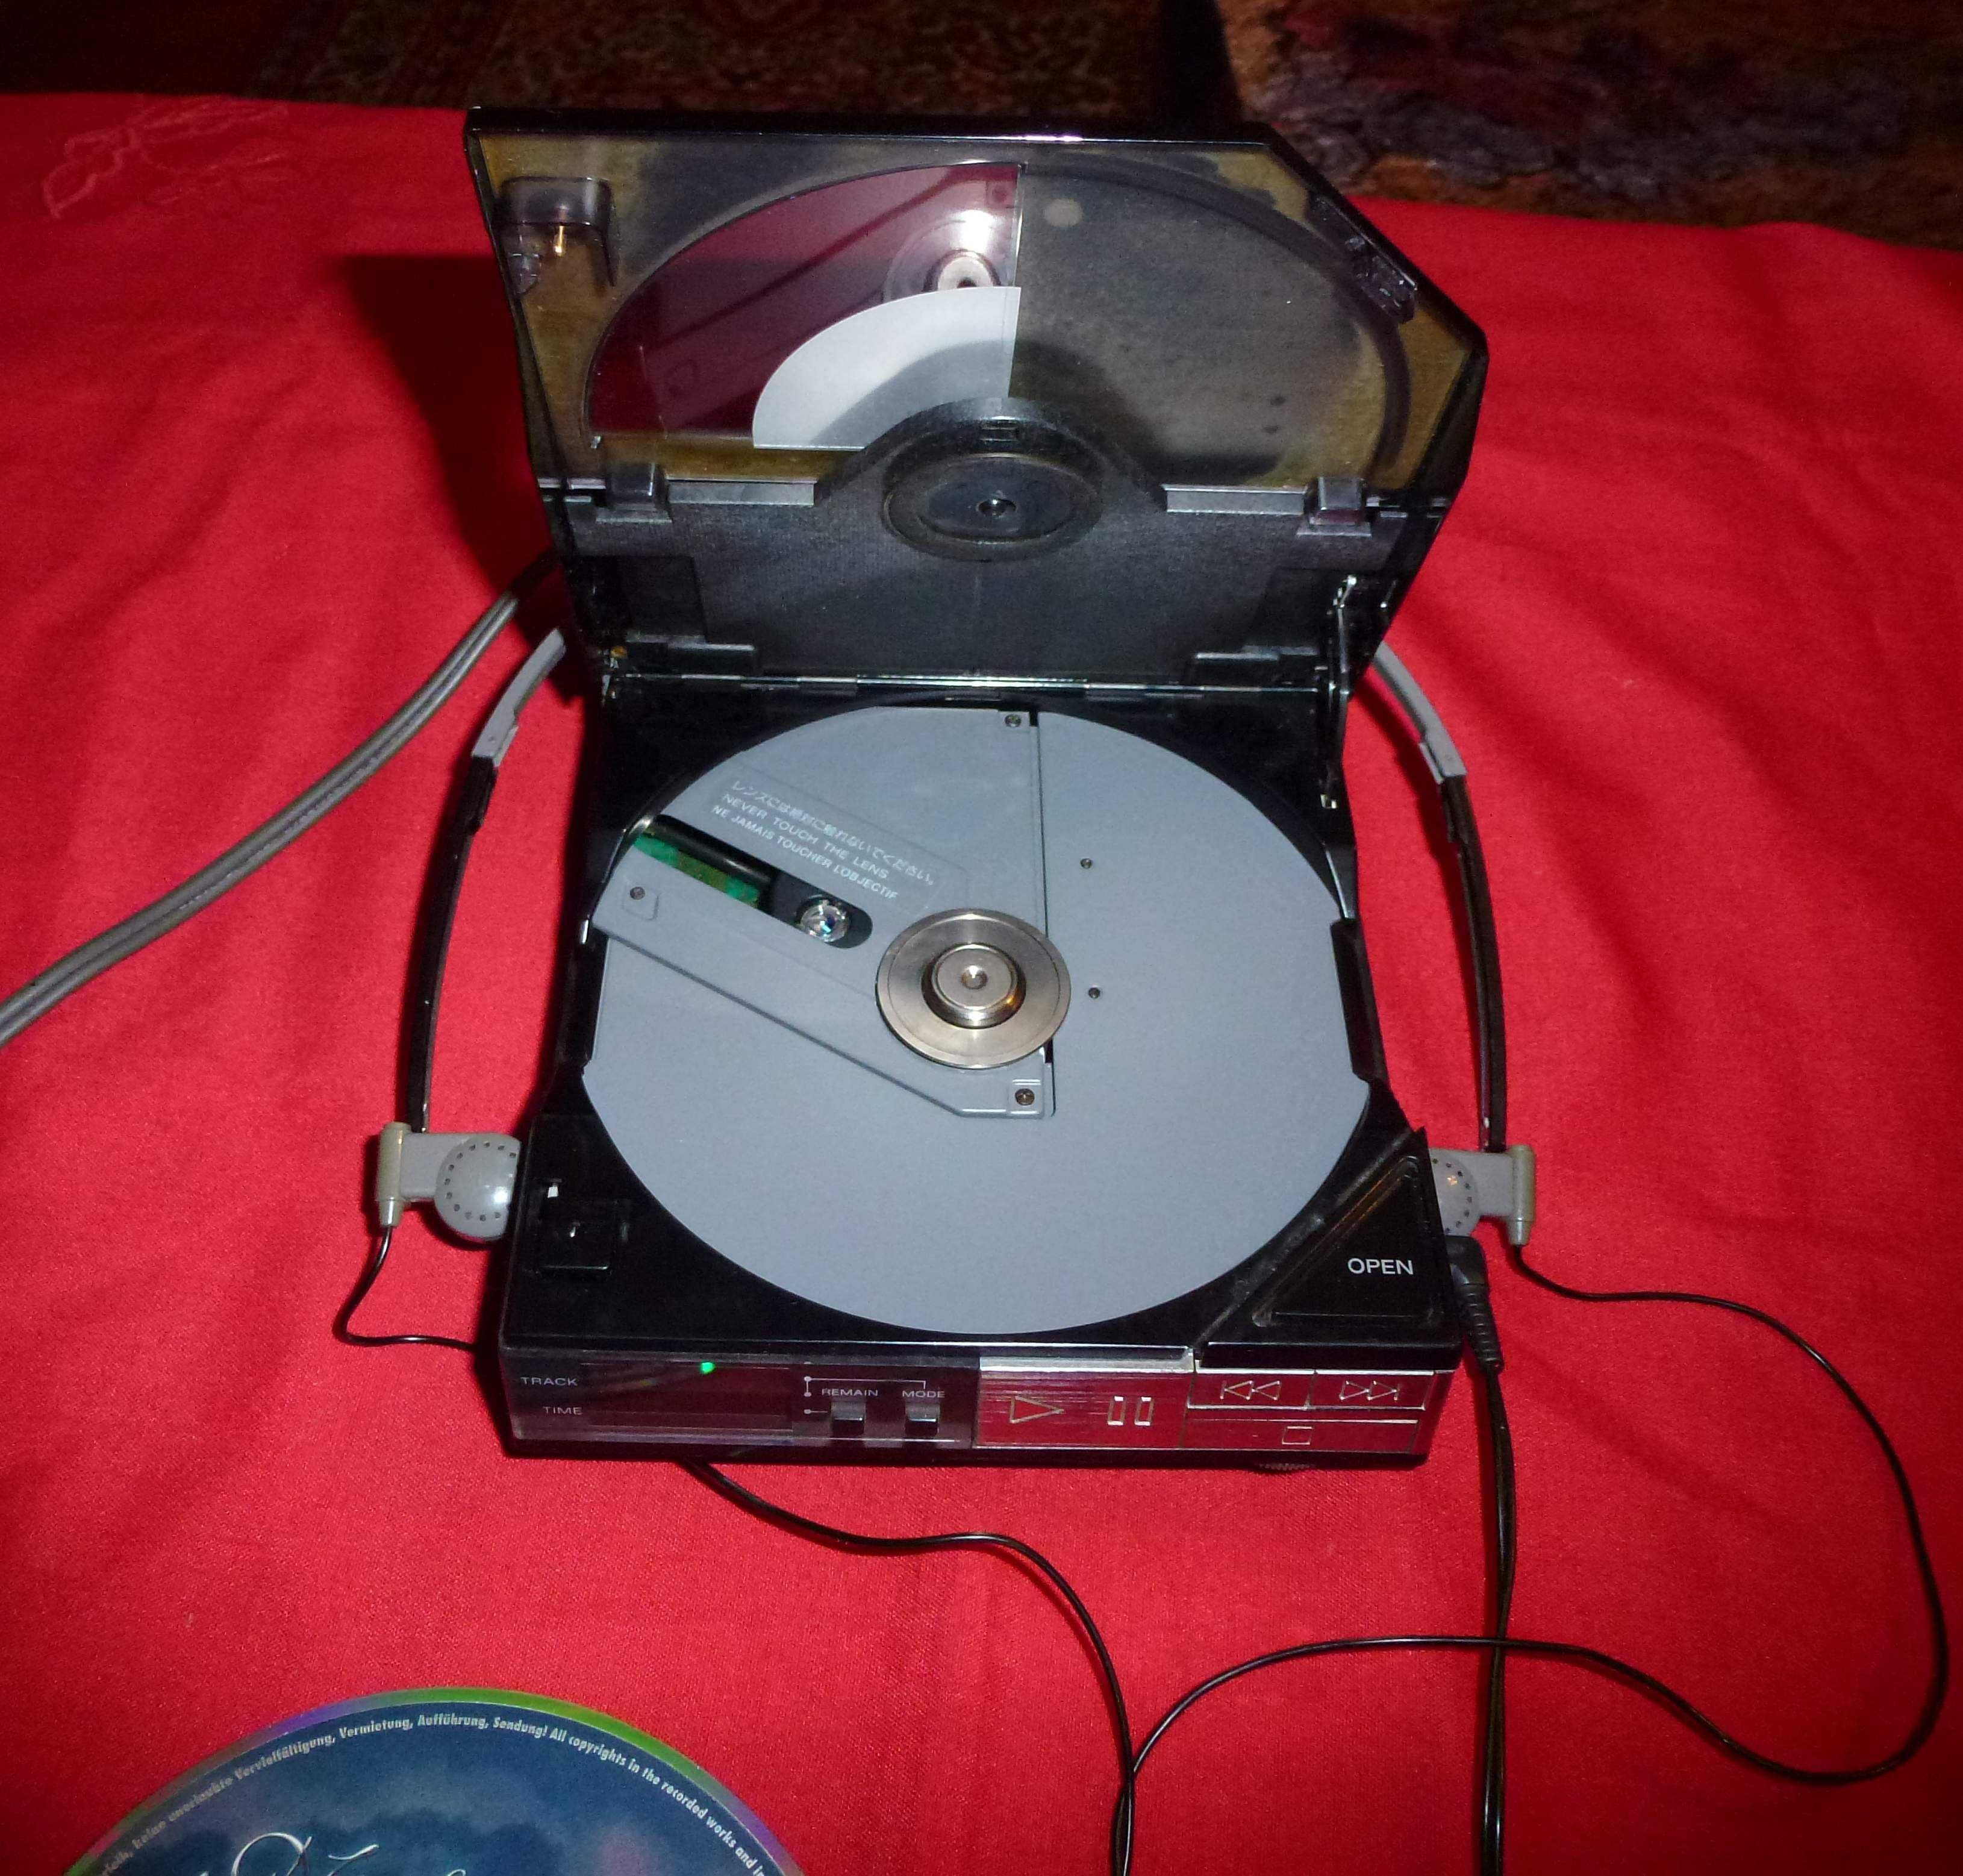 Първият в света Discman Sony D50 compact CD player 1984